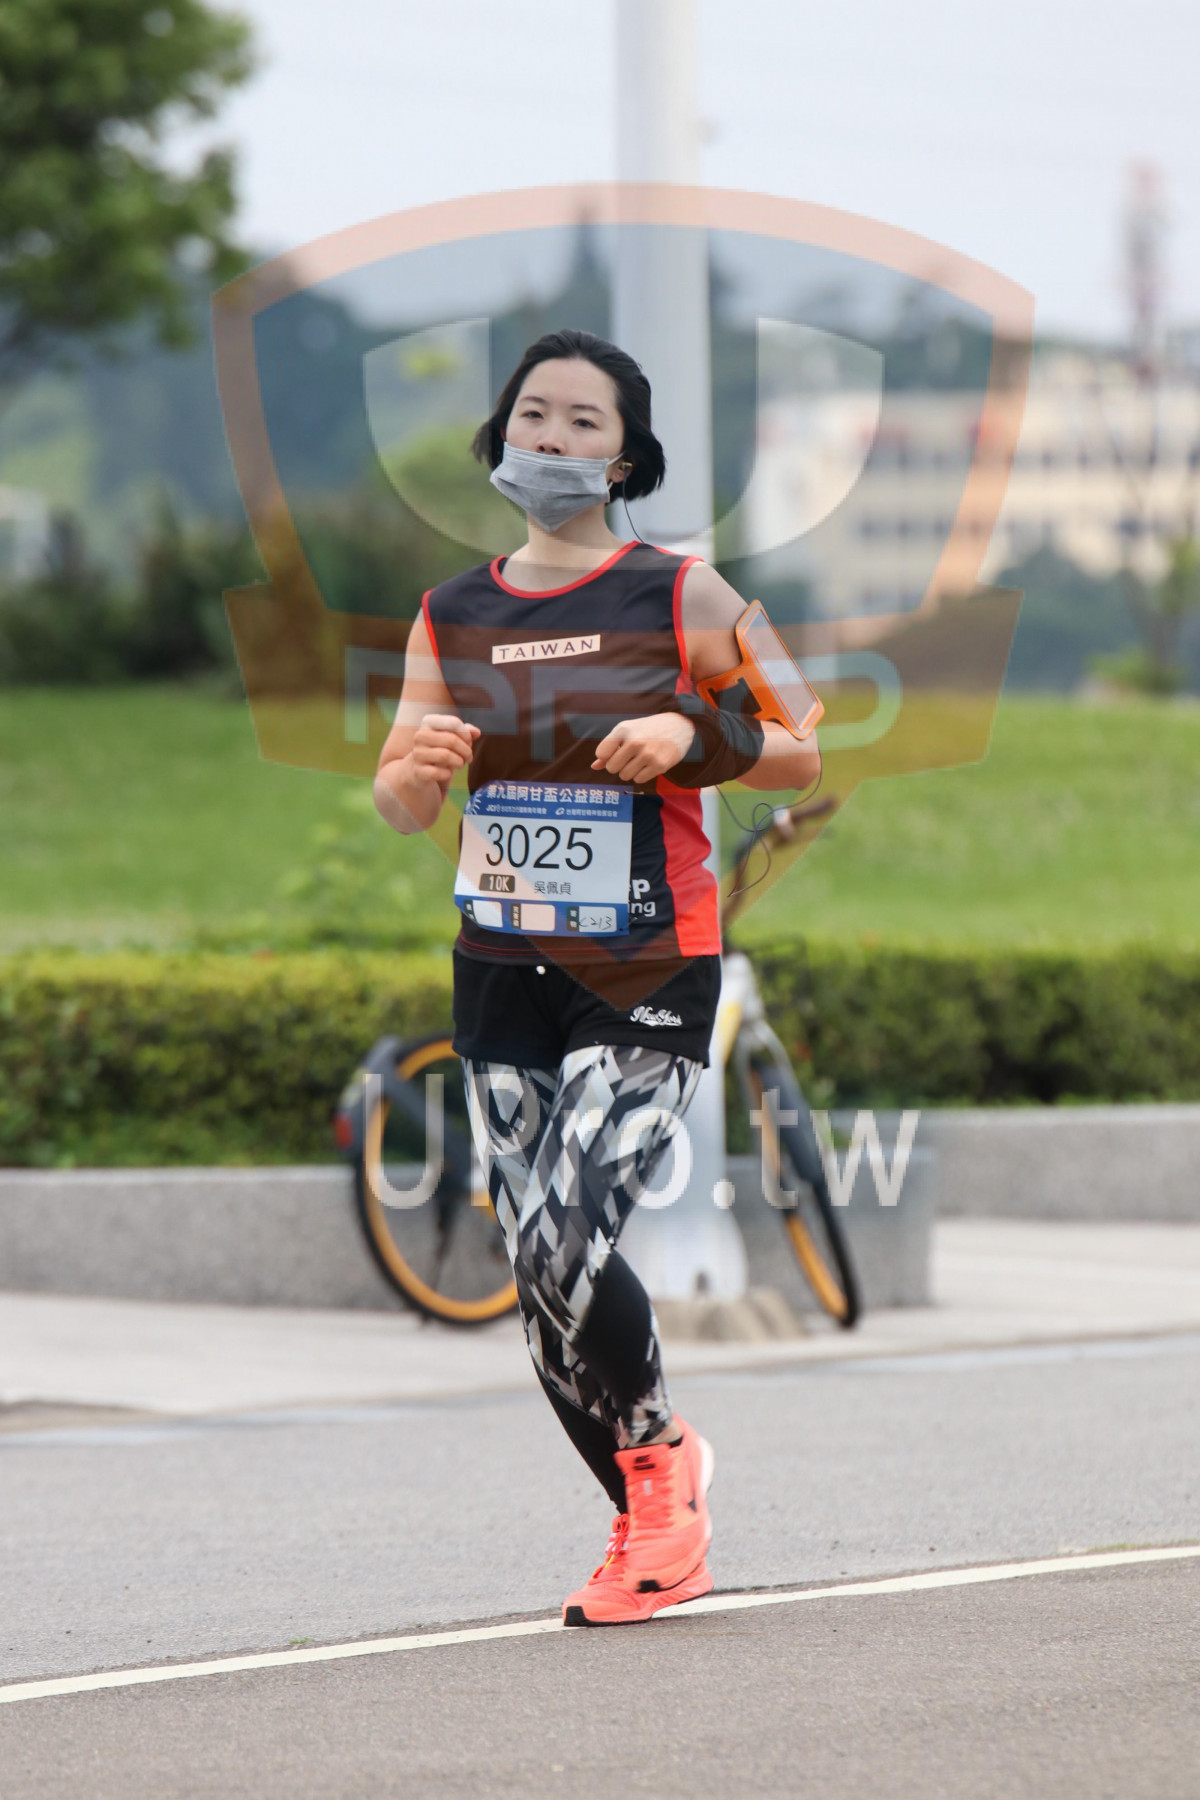 TAIWAN,It,3025,El,10K|2018 第九屆阿甘盃公益路跑|Soryu Asuka Langley